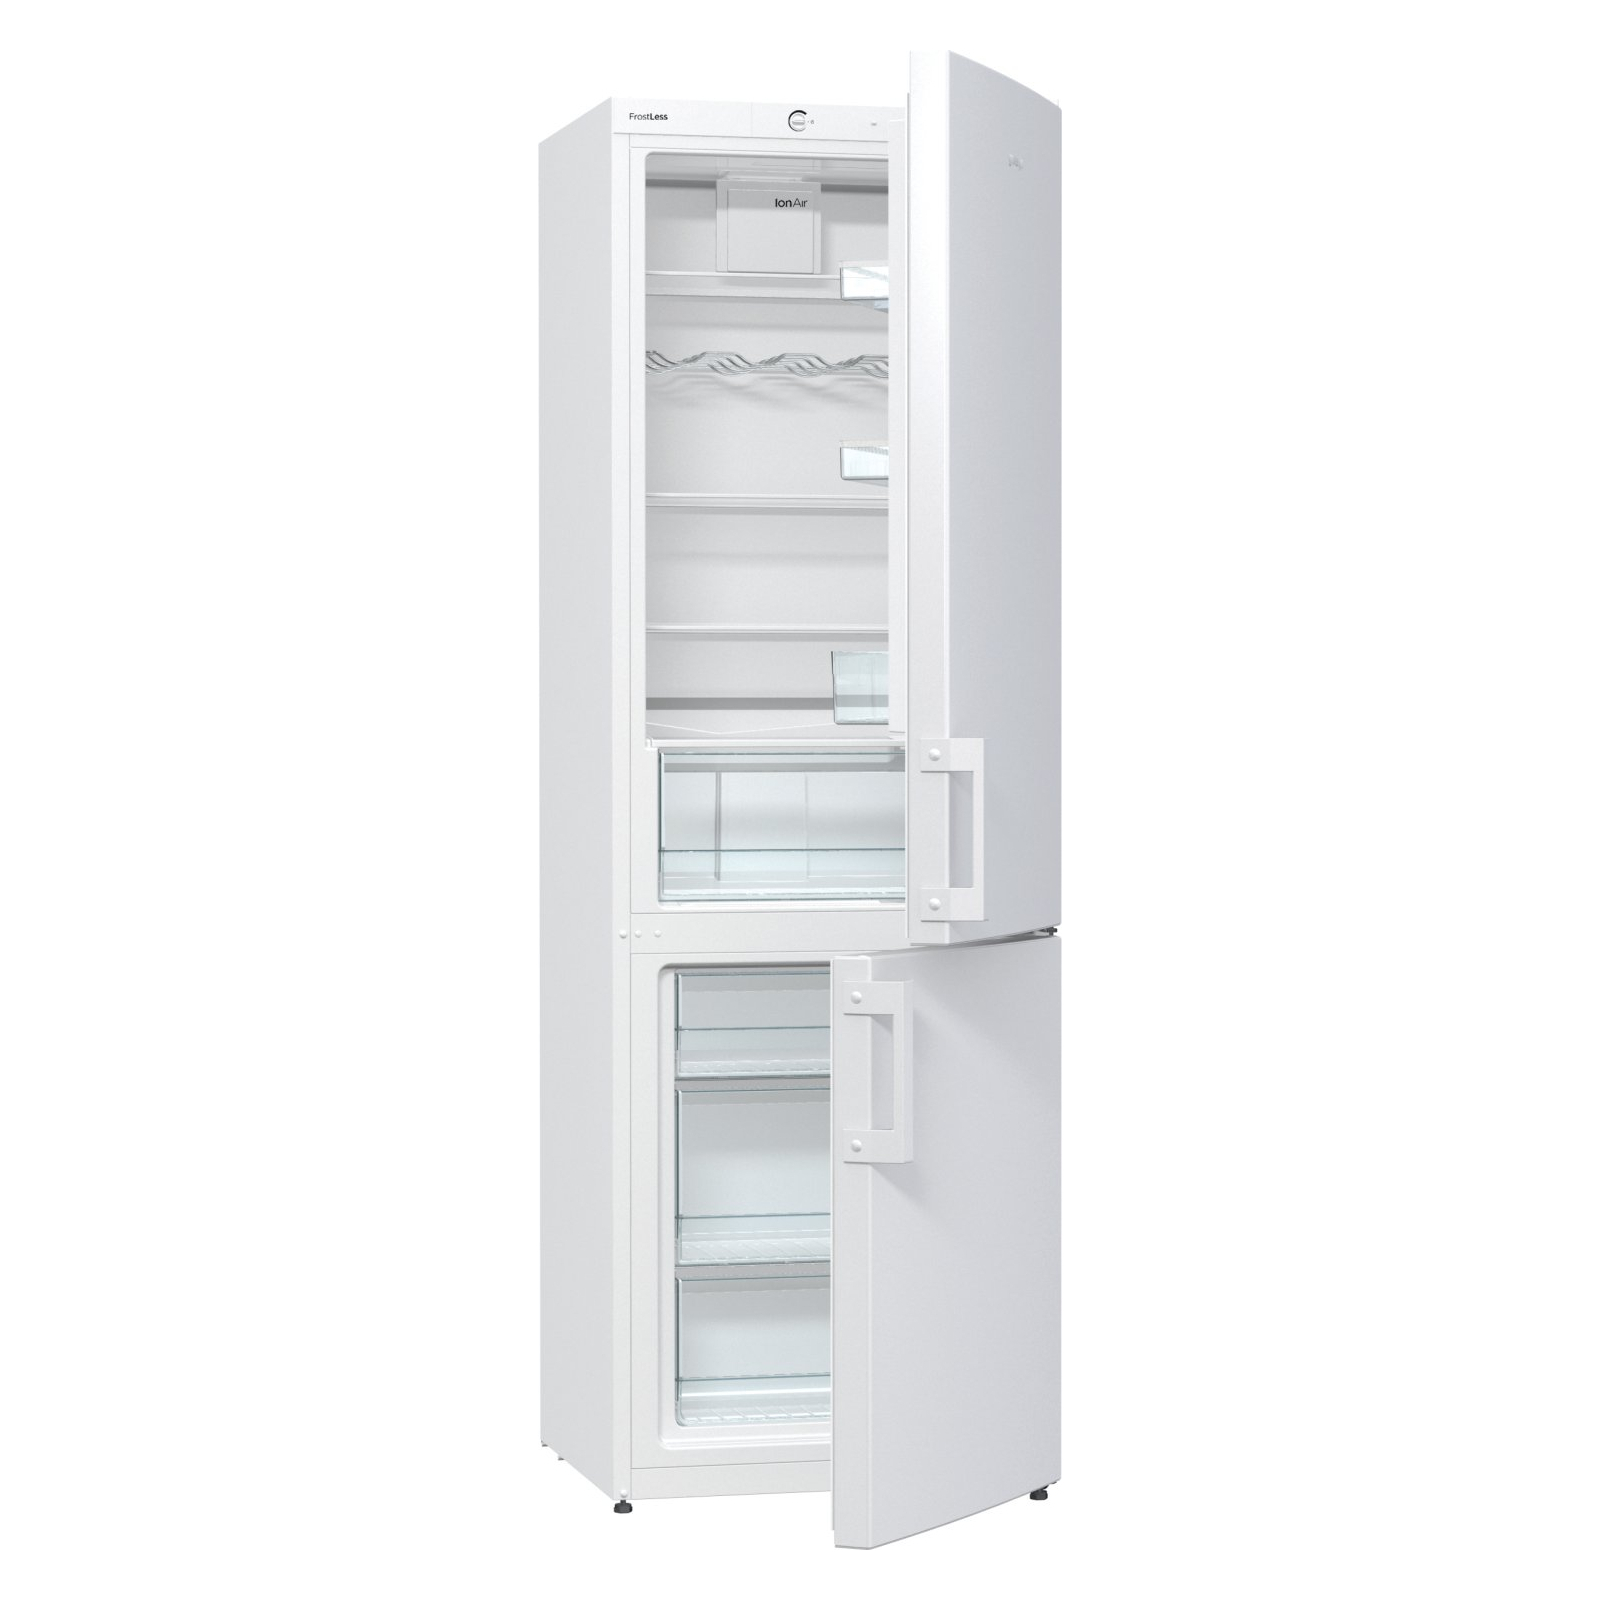 Холодильник Gorenje RK6191BW